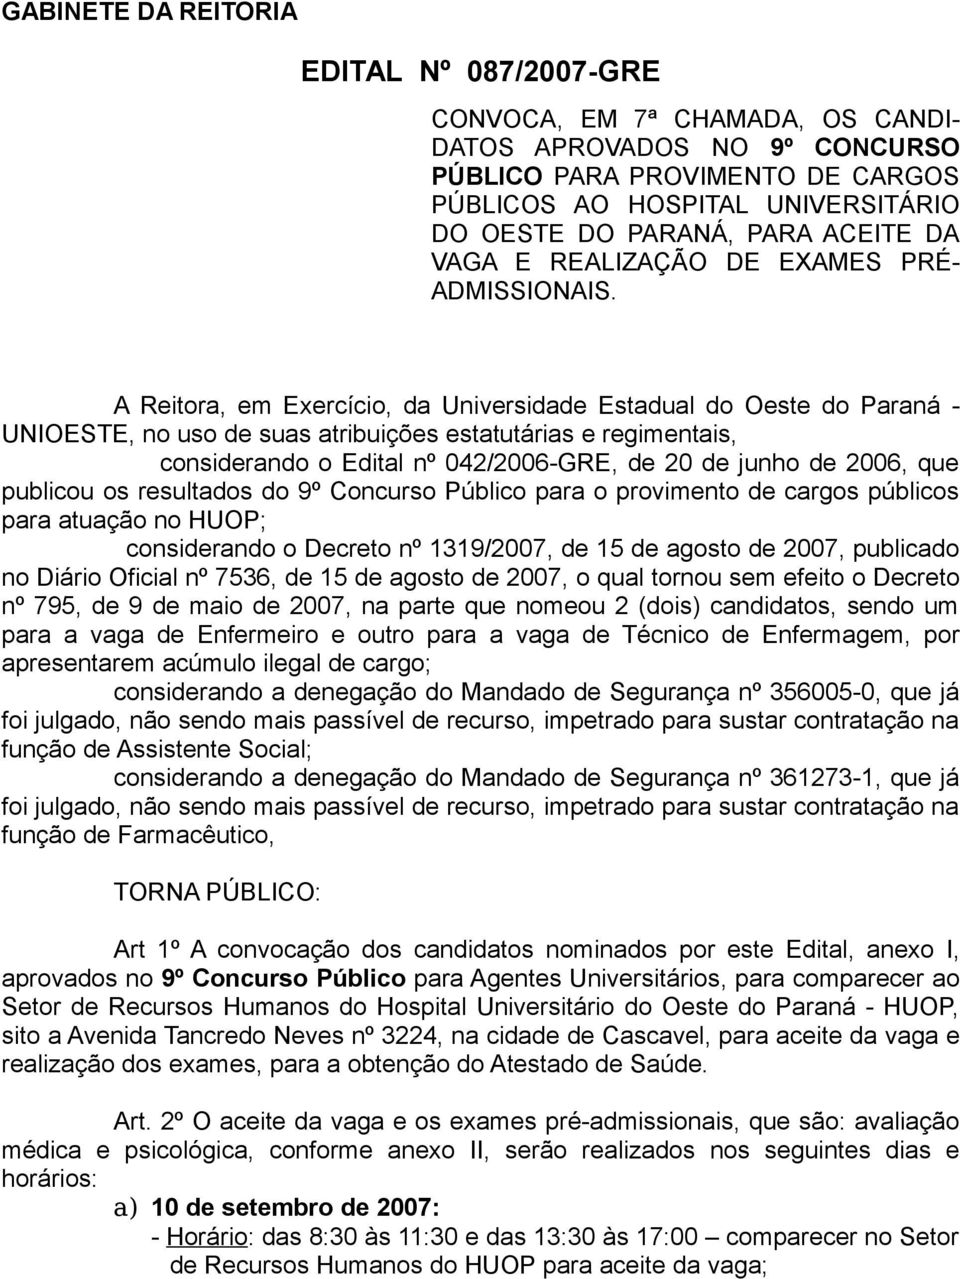 A Reitra, em Exercíci, da Universidade Estadual d Oeste d Paraná - UNIOESTE, n us de suas atribuições estatutárias e regimentais, cnsiderand Edital nº 042/2006-GRE, de 20 de junh de 2006, que publicu